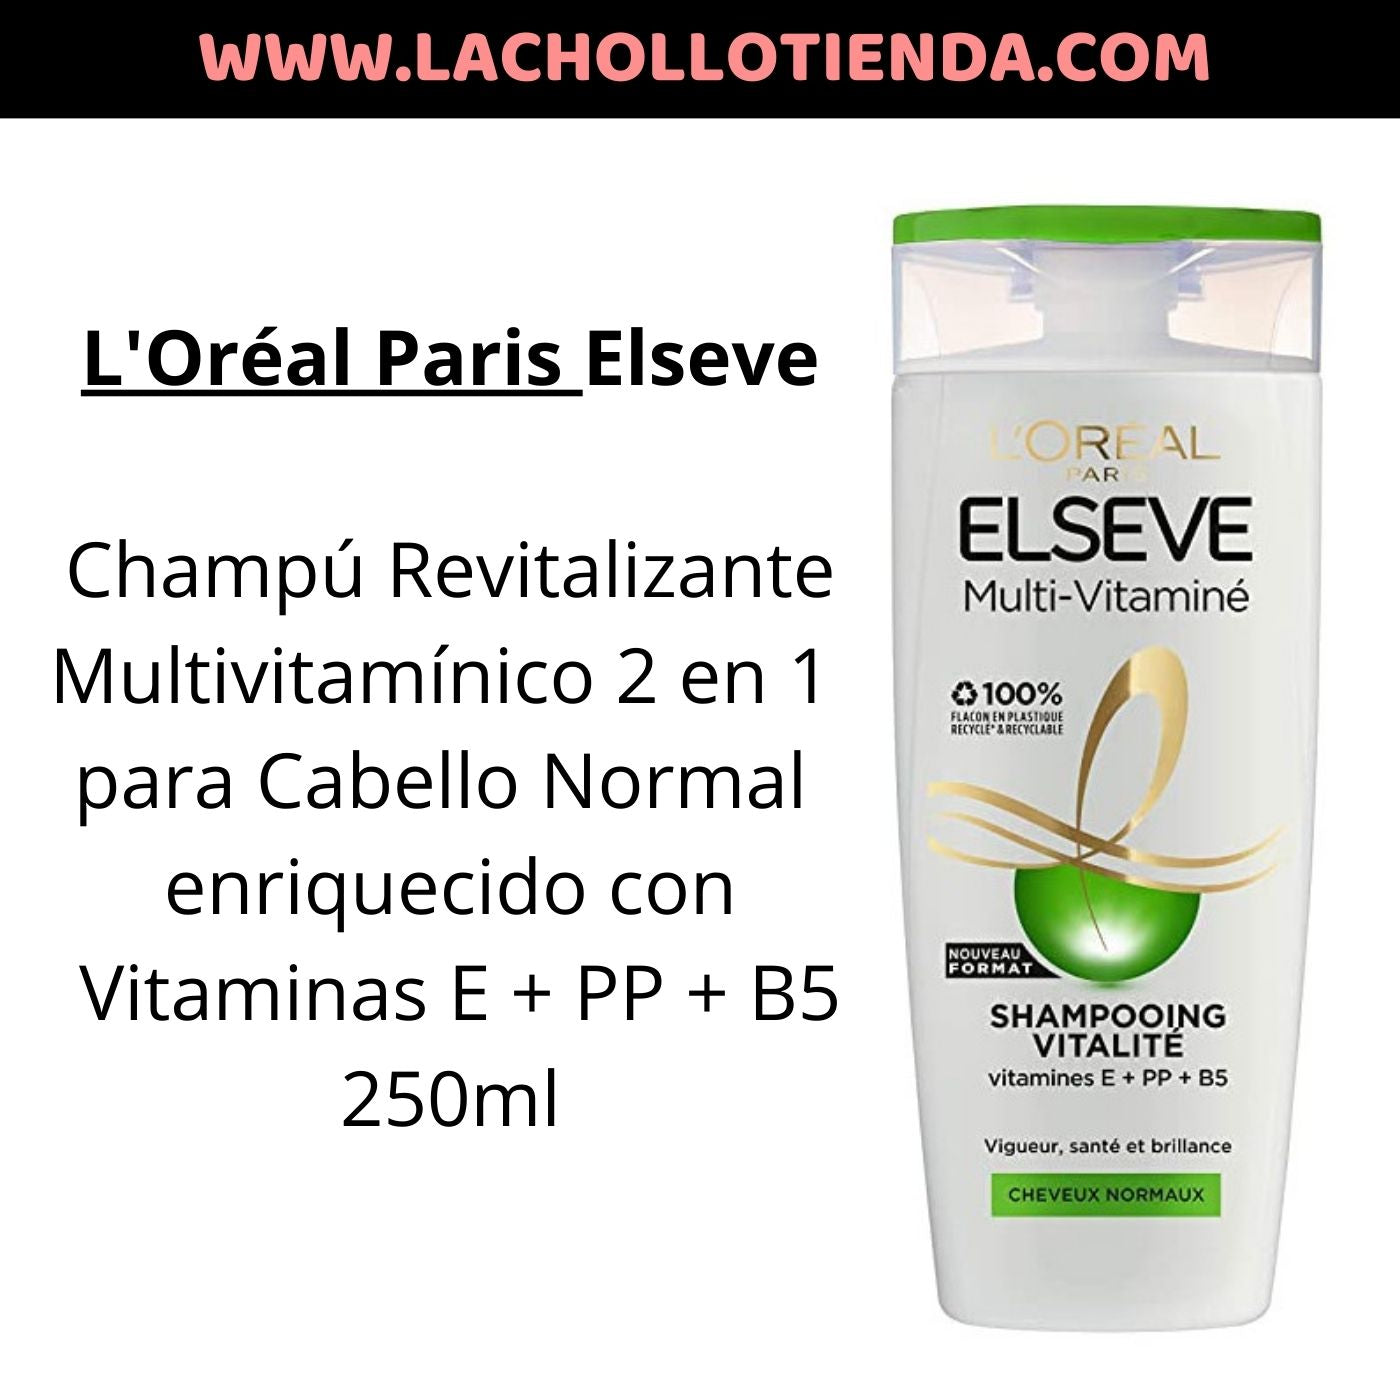 L'Oréal Paris Elseve Champú Revitalizante Multivitamínico Cabello Norm –  lachollotienda